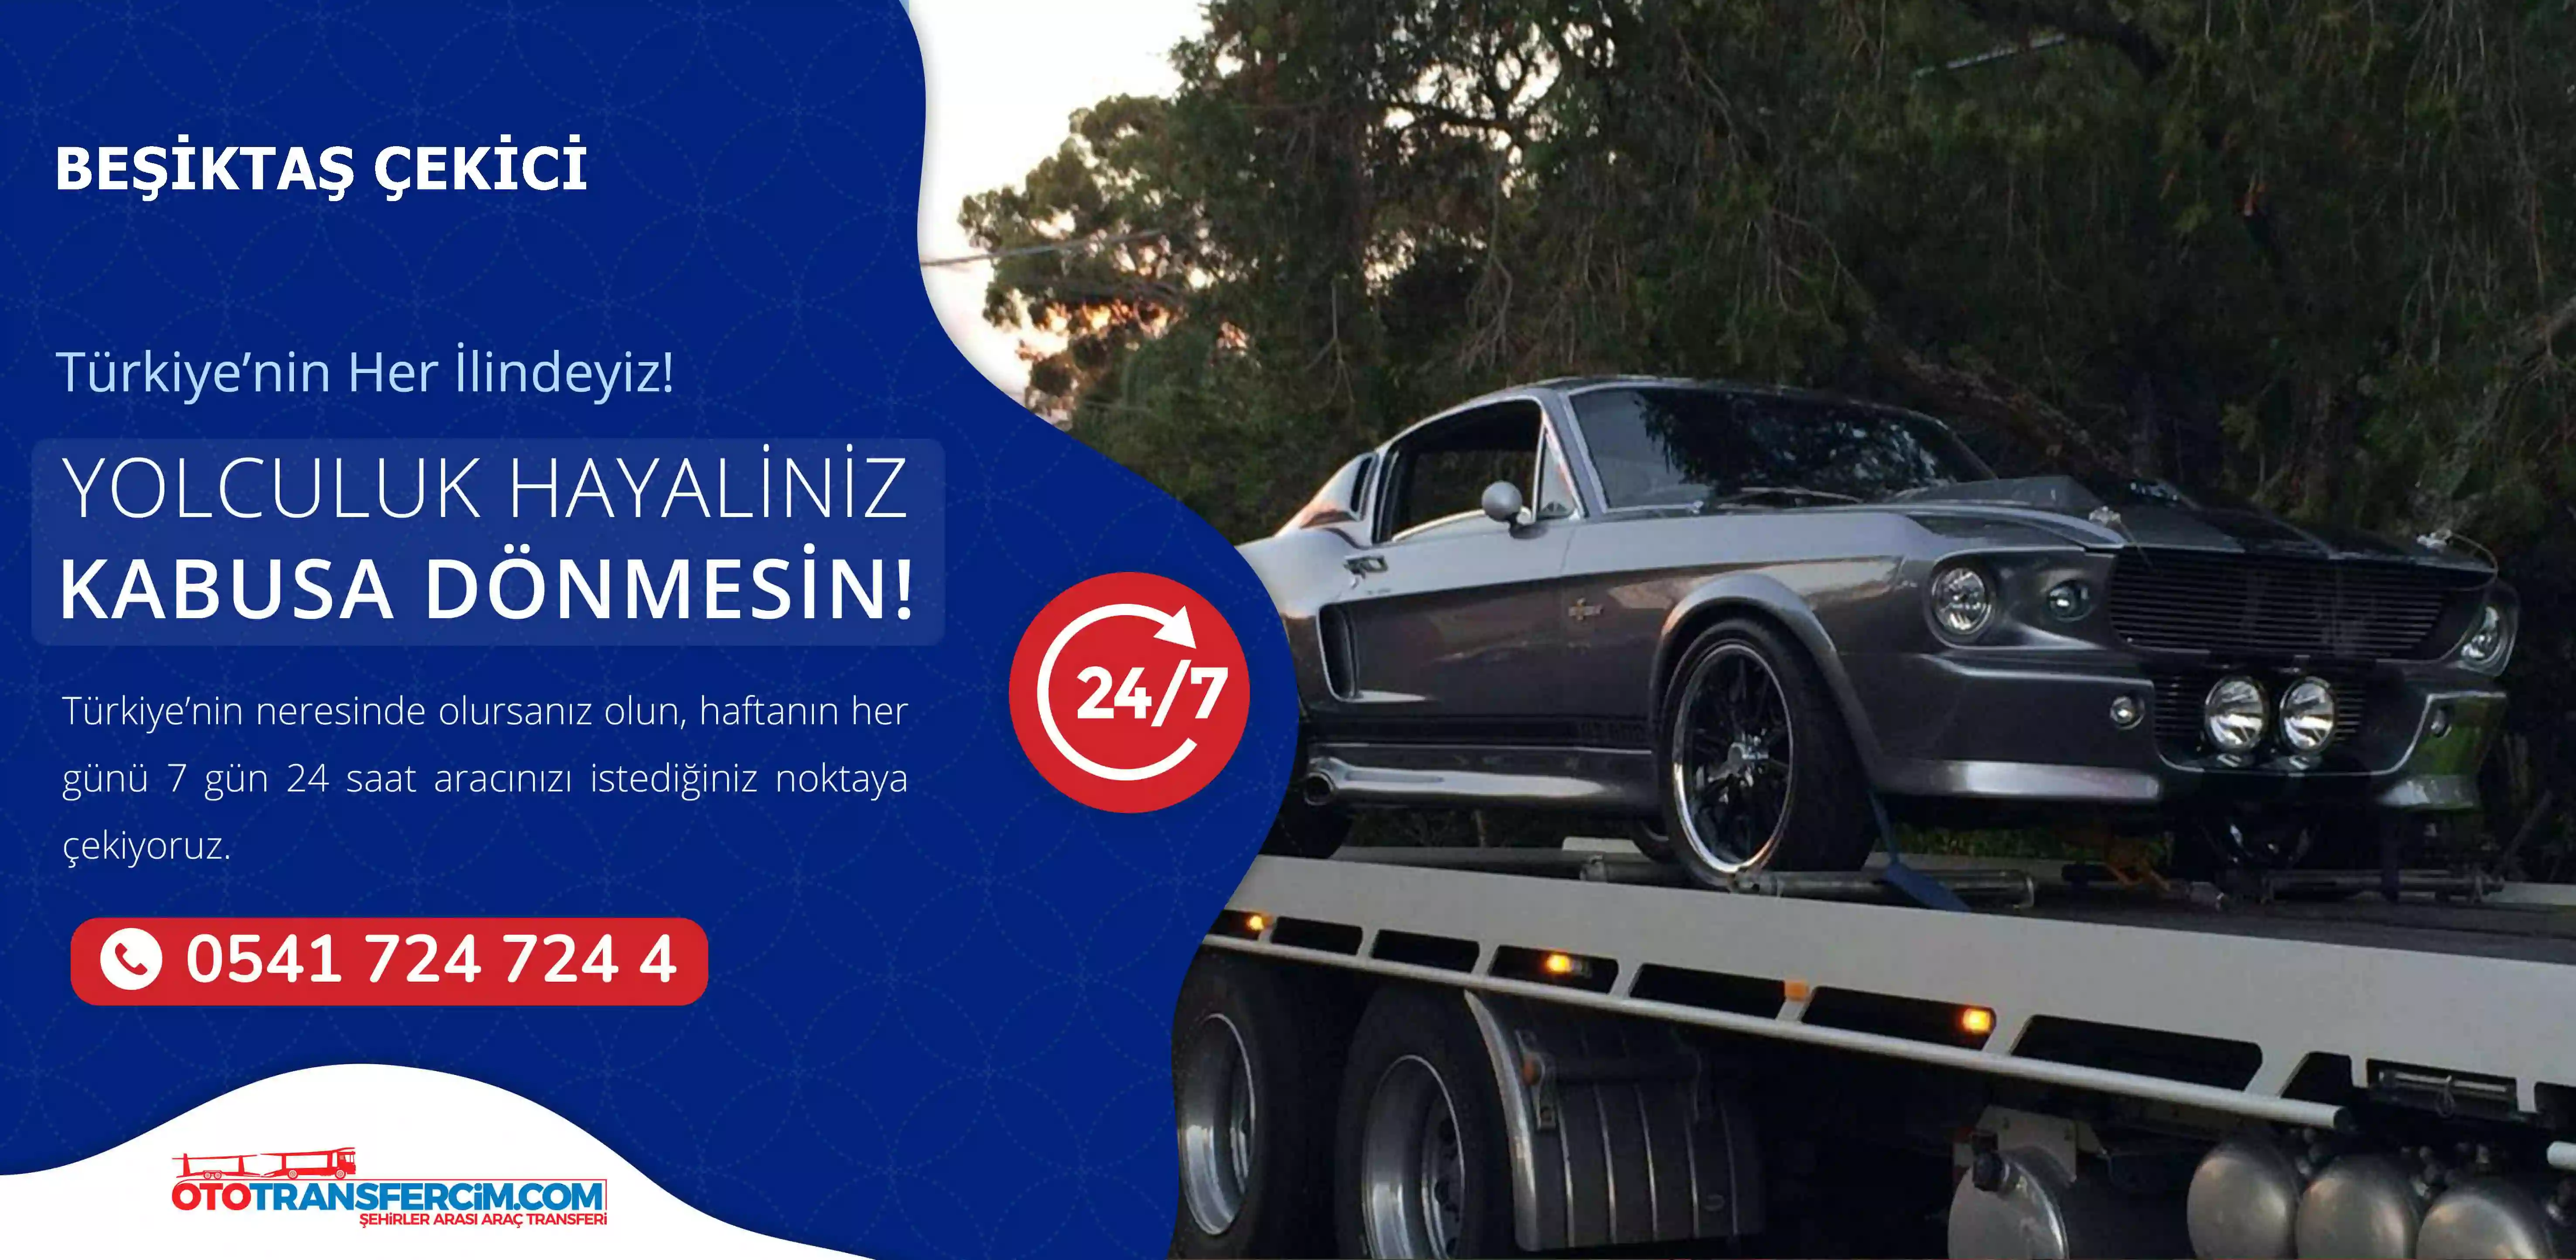 Beşiktaş Oto Çekici